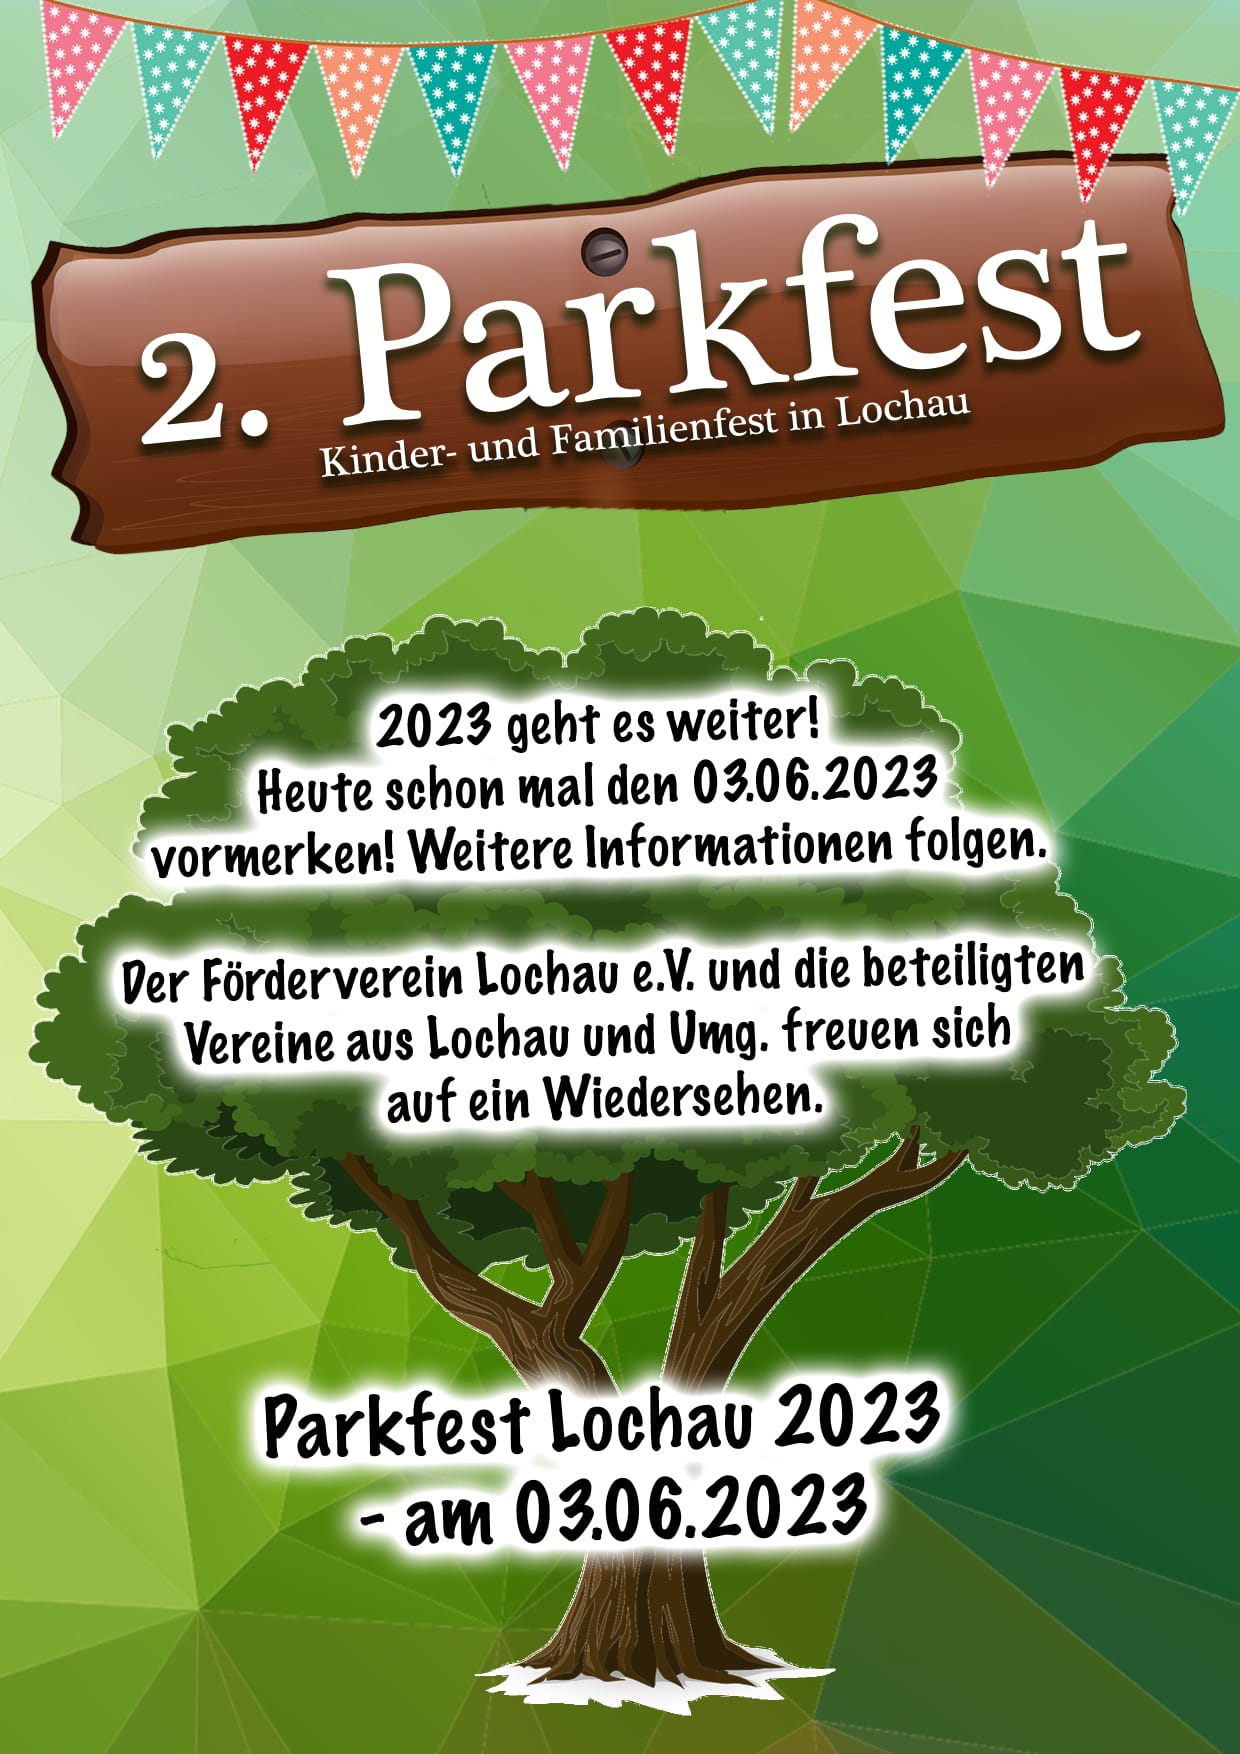 2. Parkfest